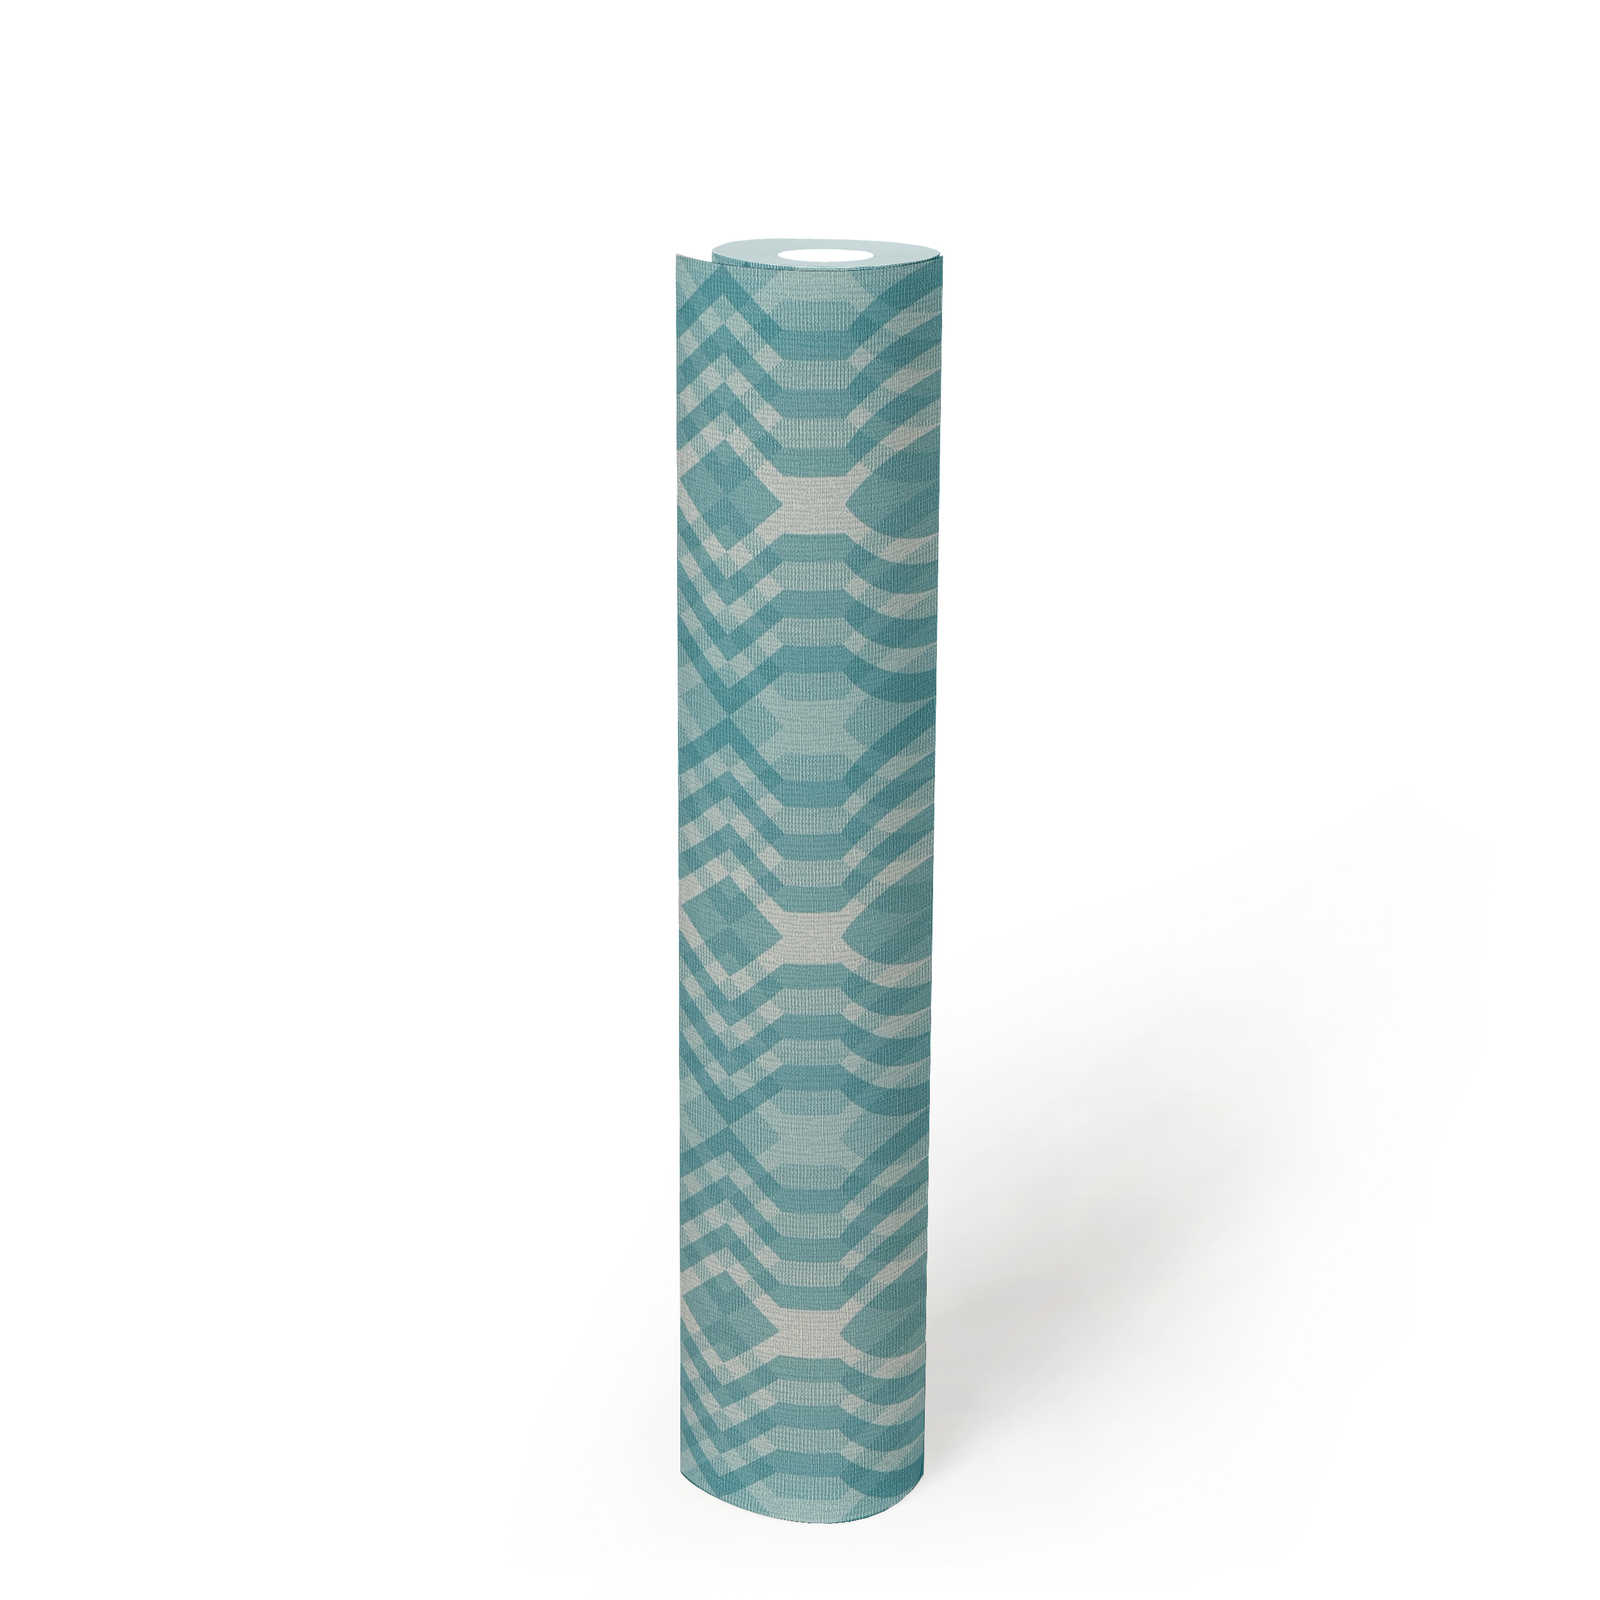             Retro Tapete mit geometrischem Muster – Blau, Creme, Weiß
        